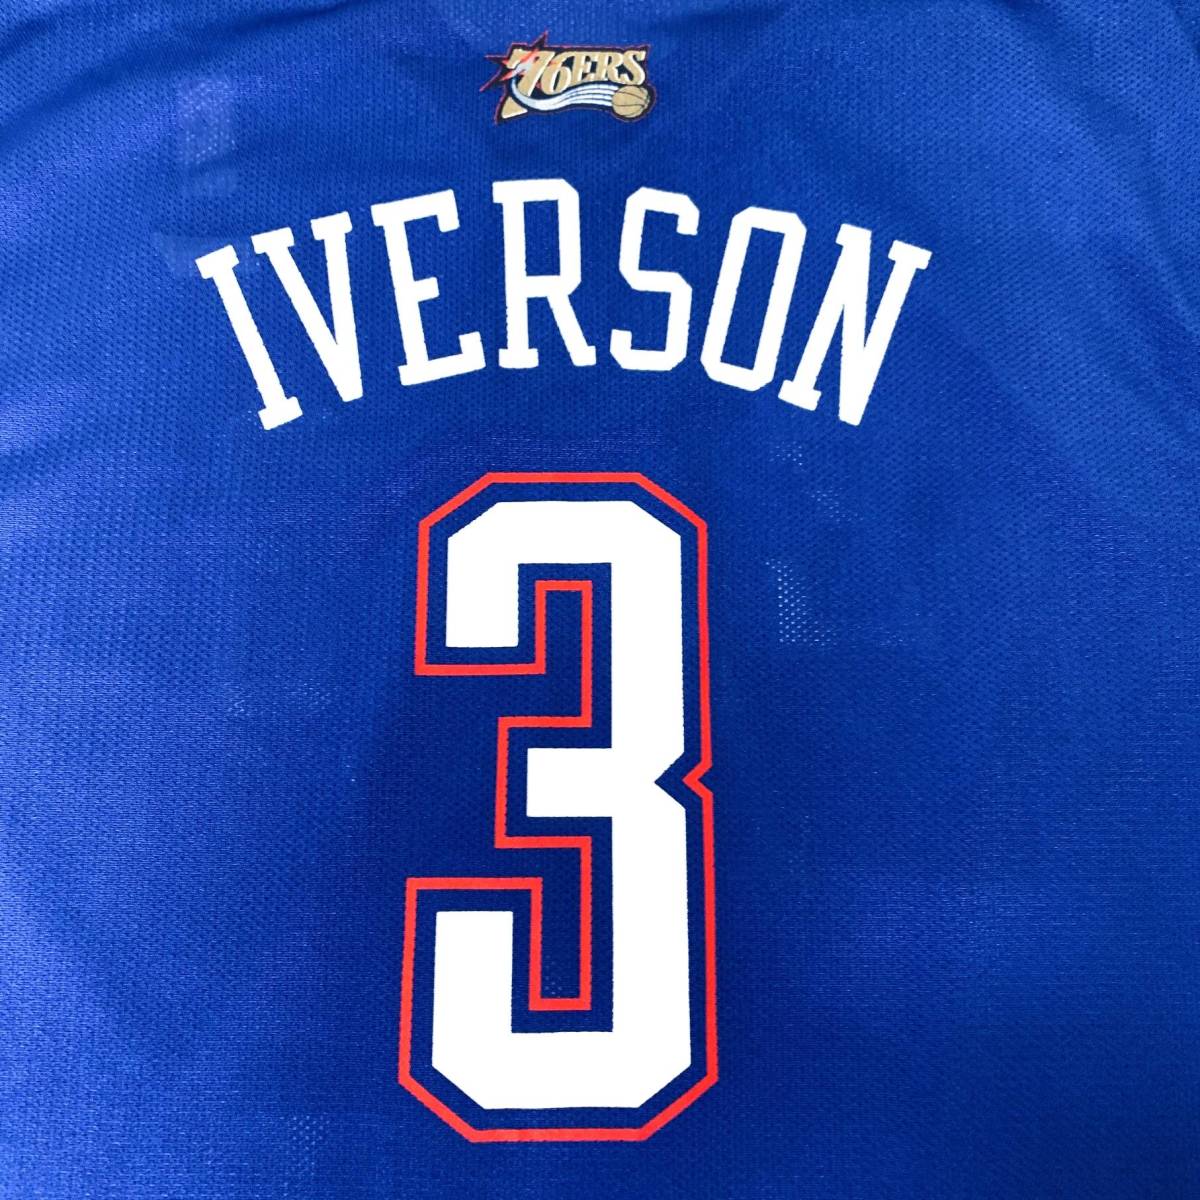 00s リーボック NBA オールスター アイバーソン ゲームシャツ XL REEBOK ALL EASTERN アレン・アイバーソン '04  スイングマン バスケシャツ